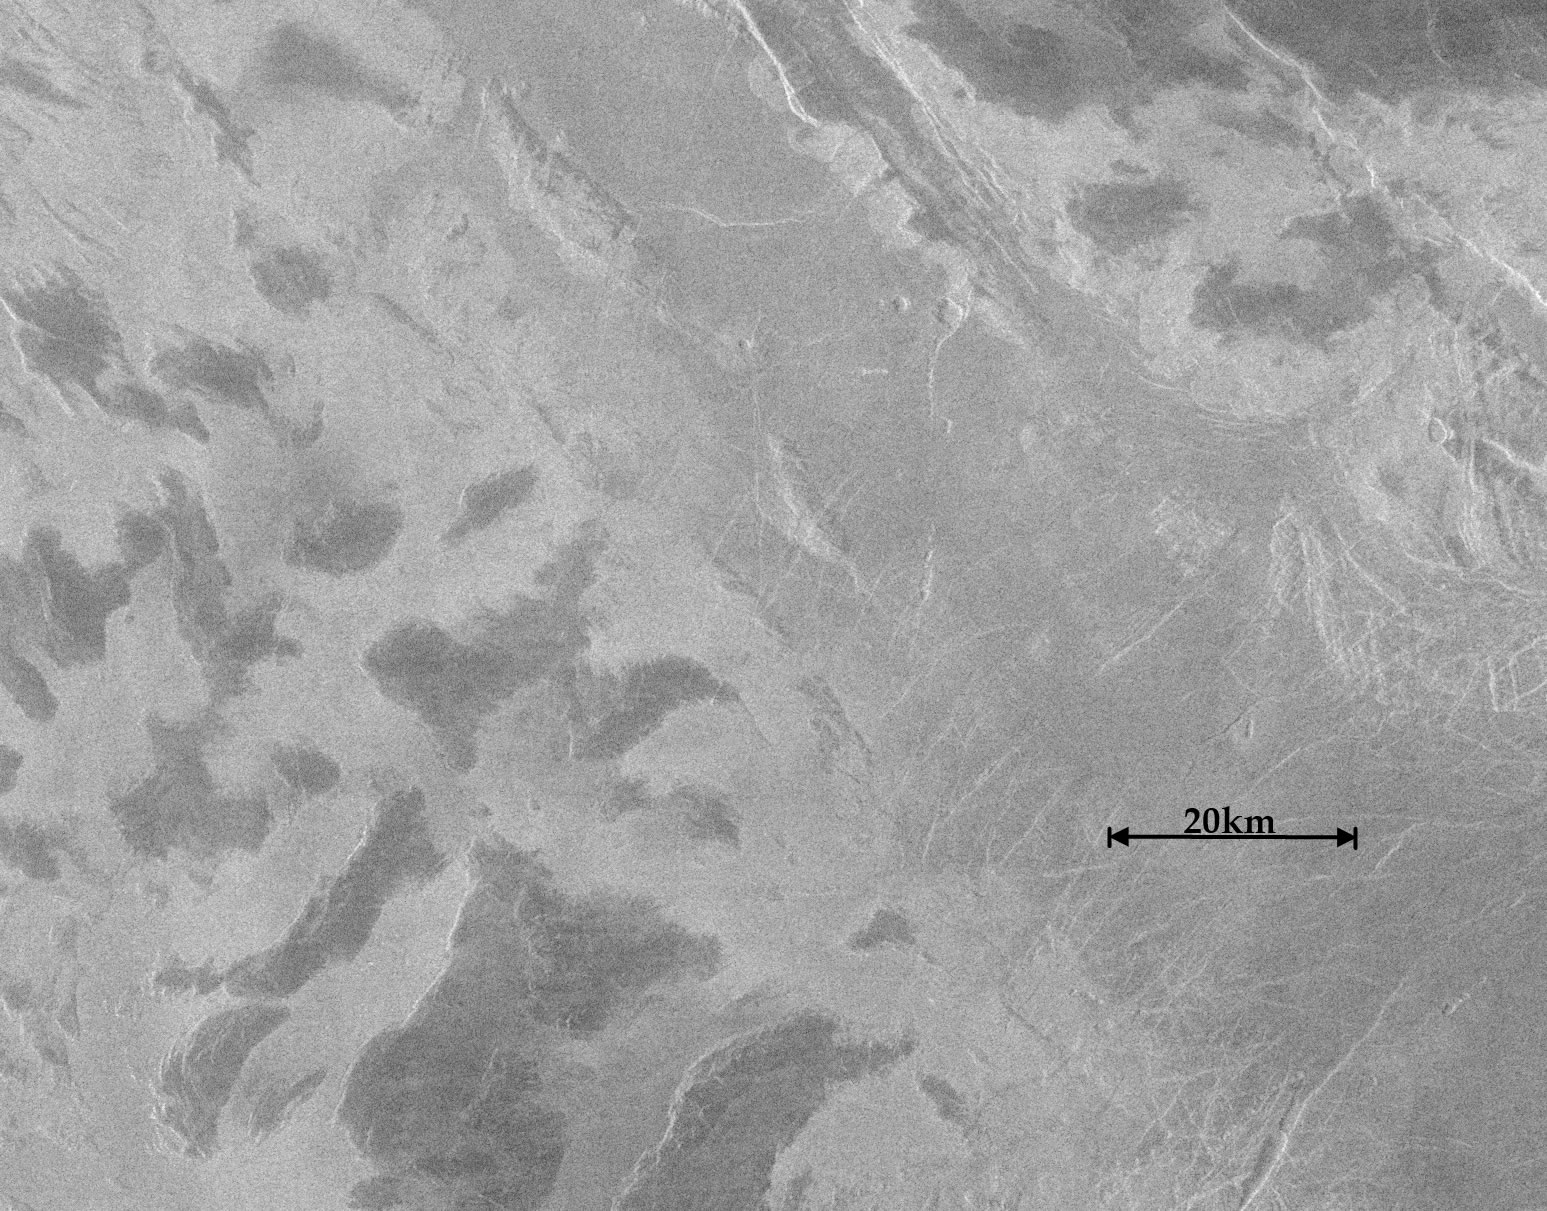  Les zones les plus claires sur ces images radar de la région d'Ovda sur Vénus sont des hauts plateaux. Ils portent des sommets qui apparaissent plus sombres et dont la composition intrigue les planétologues. © Harringtong Trieman, Nasa, JPL-Caltech